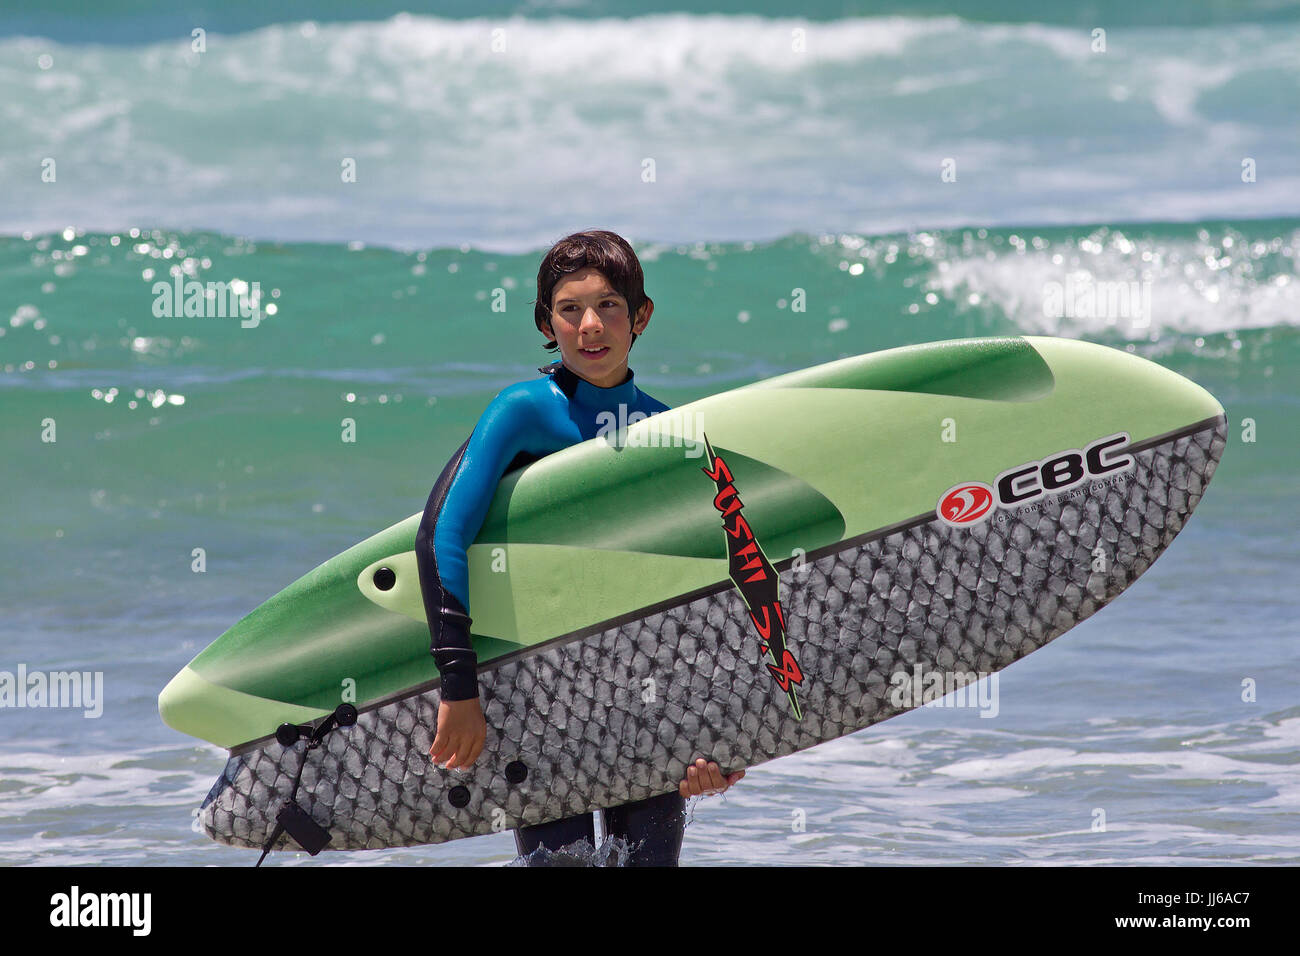 Junge Junge Surfer und surfboard Stockfoto